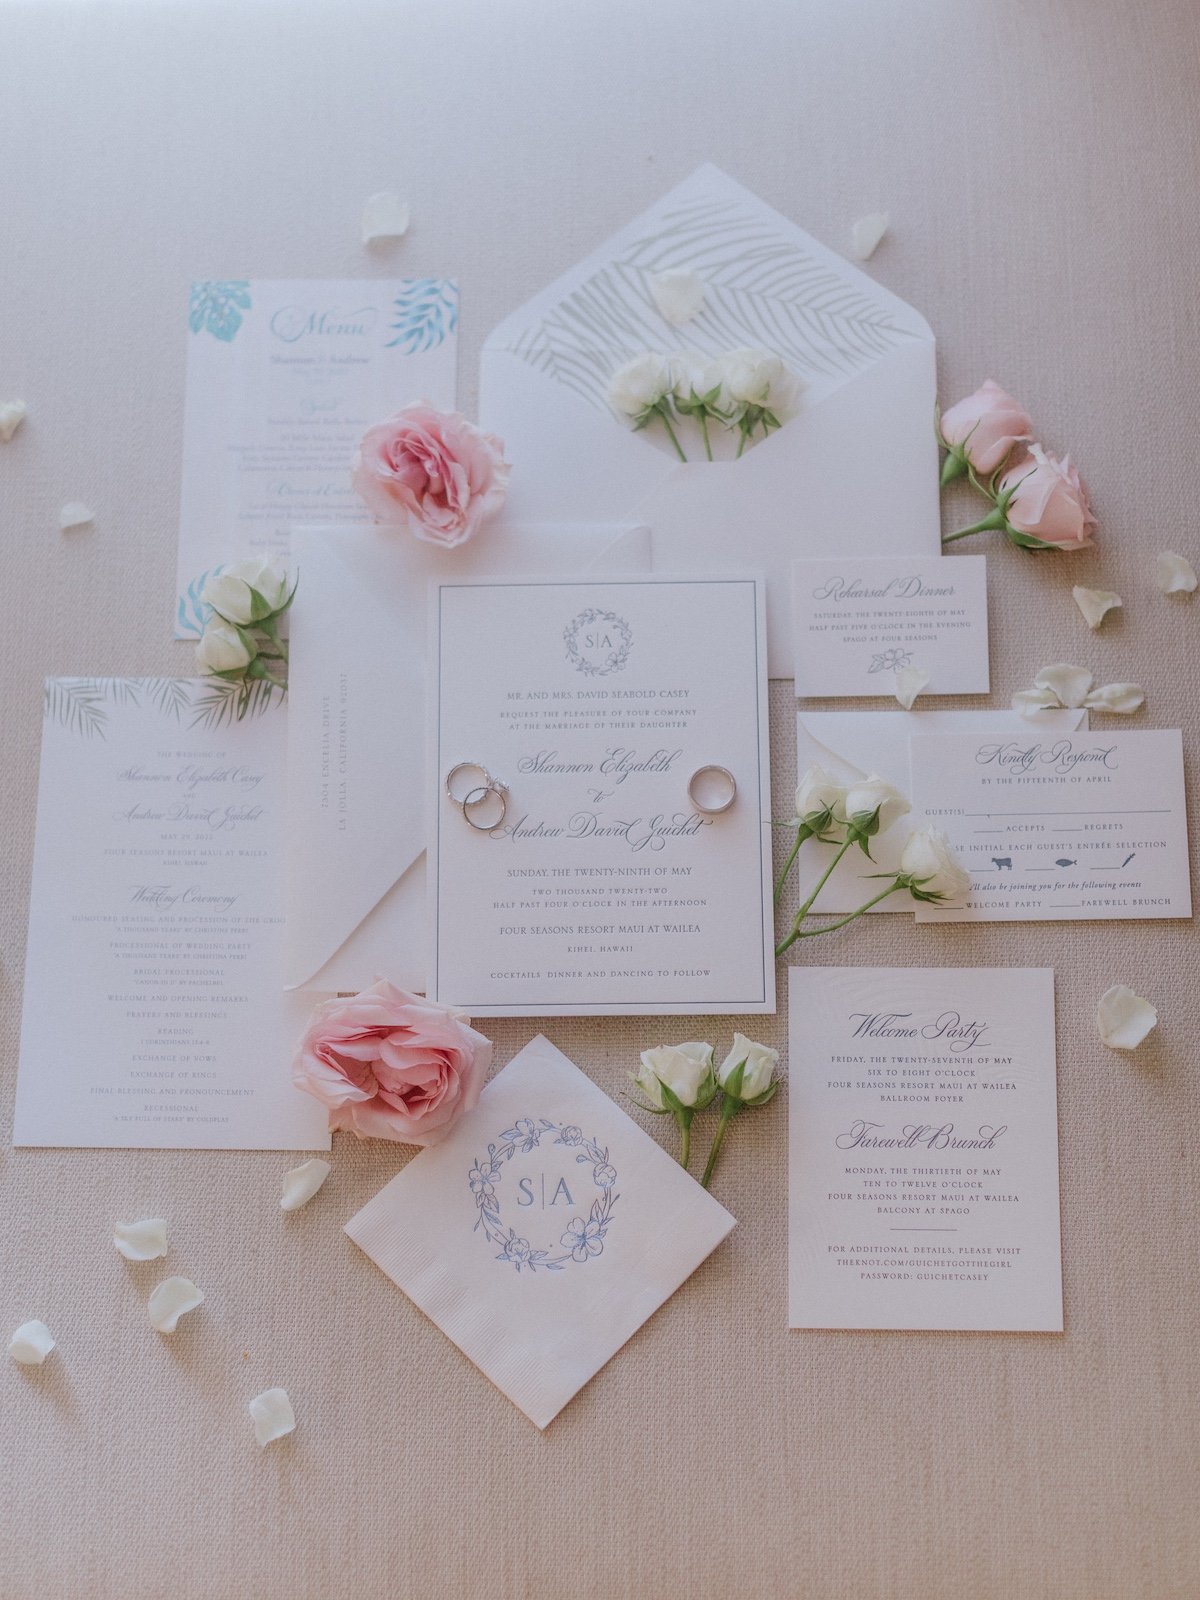 All-white wedding stationery